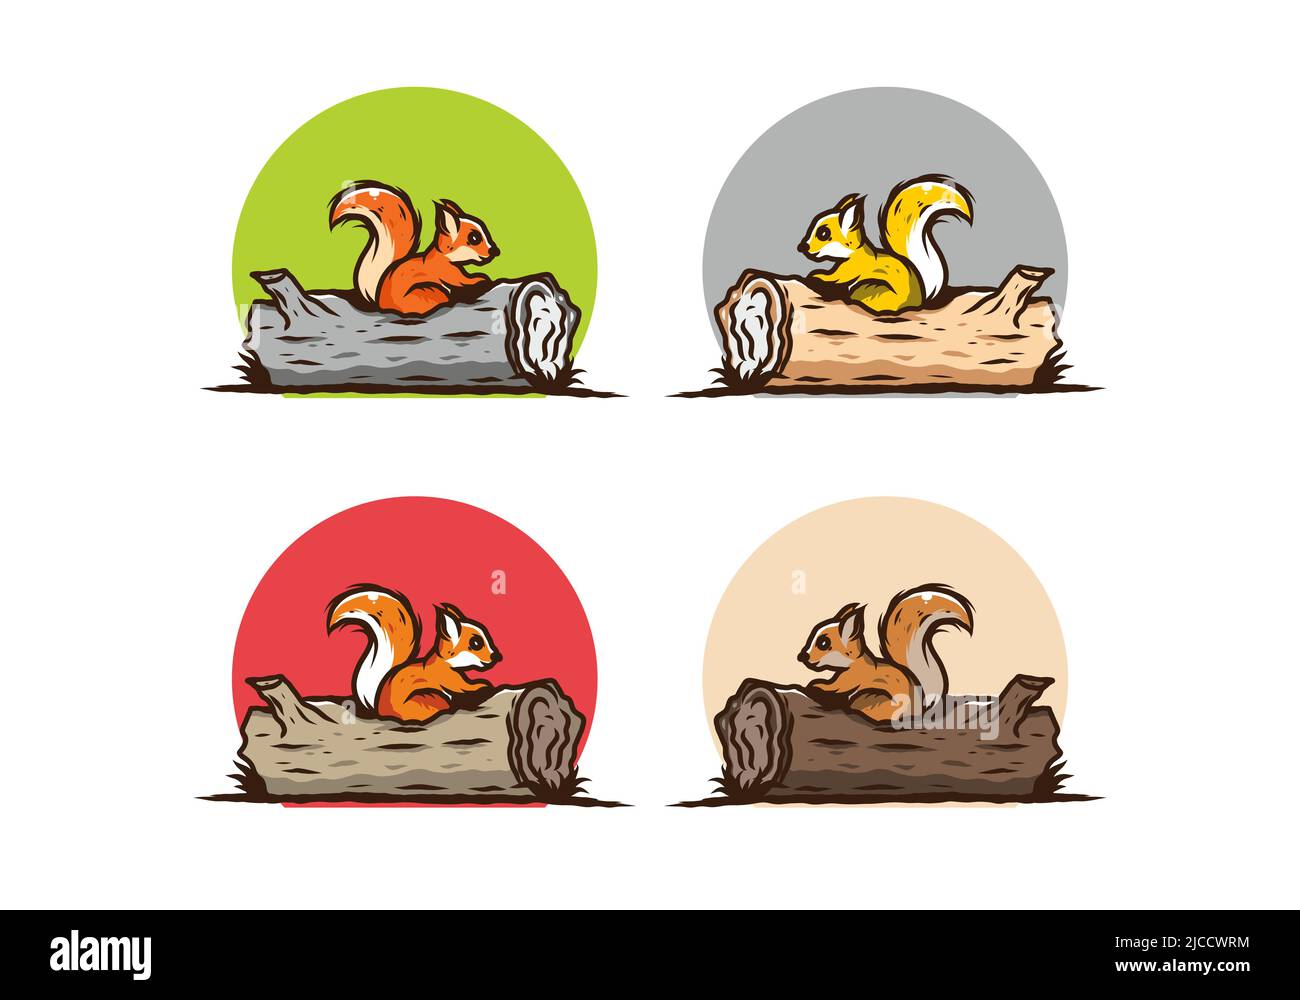 Einsames Eichhörnchen versteckt in einem toten Baumstamm Illustration Design Stock Vektor